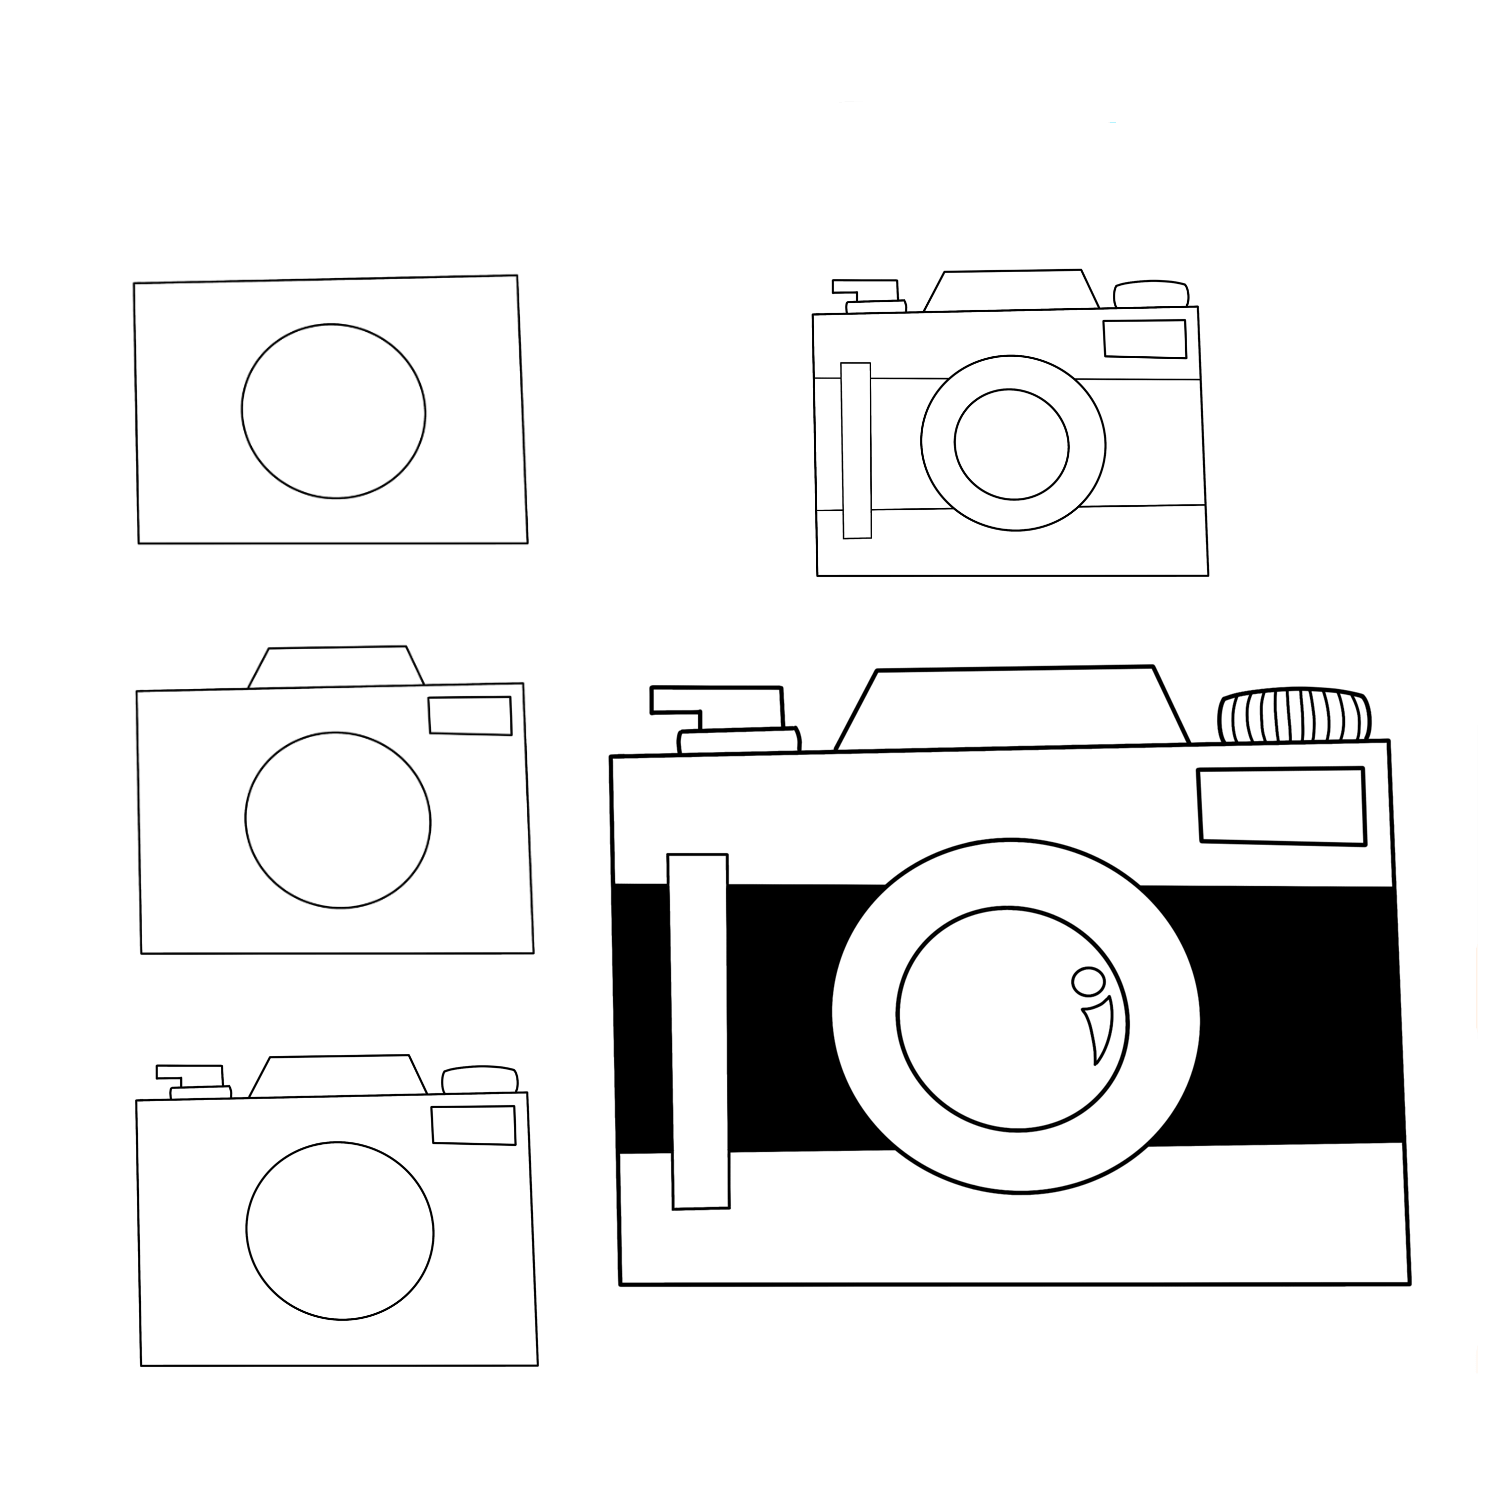 Yksinkertaisen kameran piirtäminen (3) piirustus